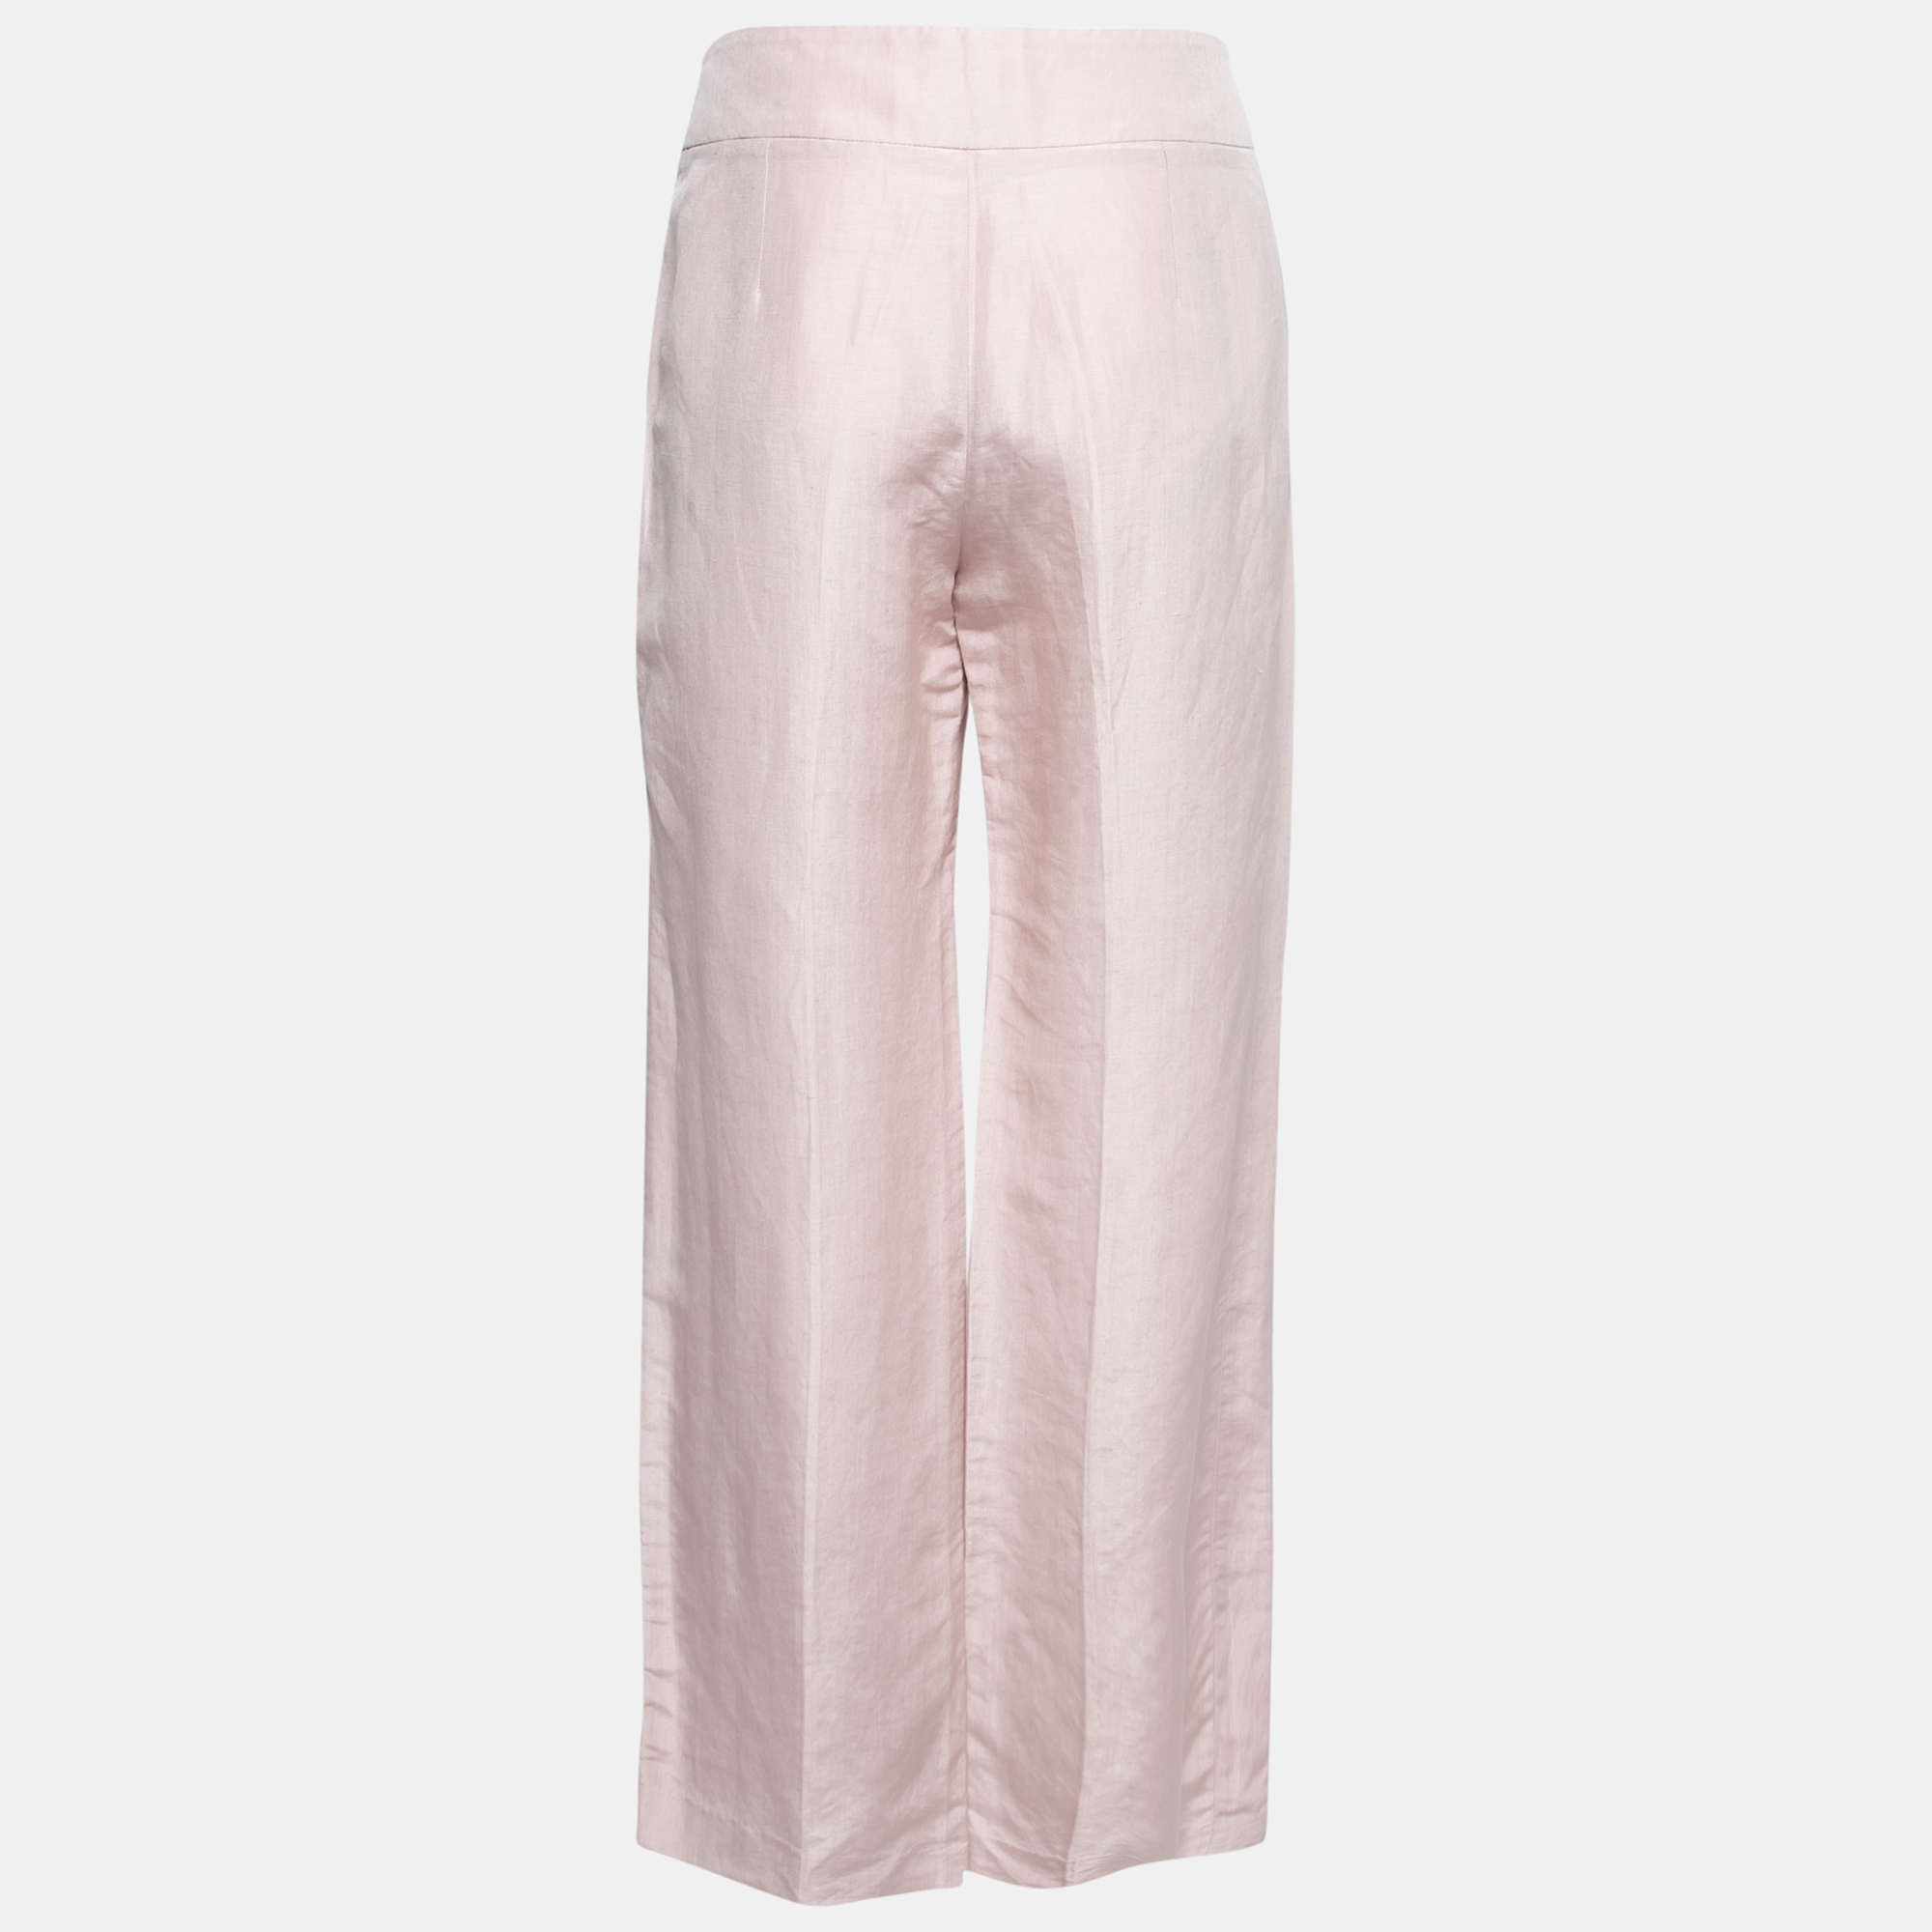 

Armani Collezioni Blush Pink Linen High Waisted Pants